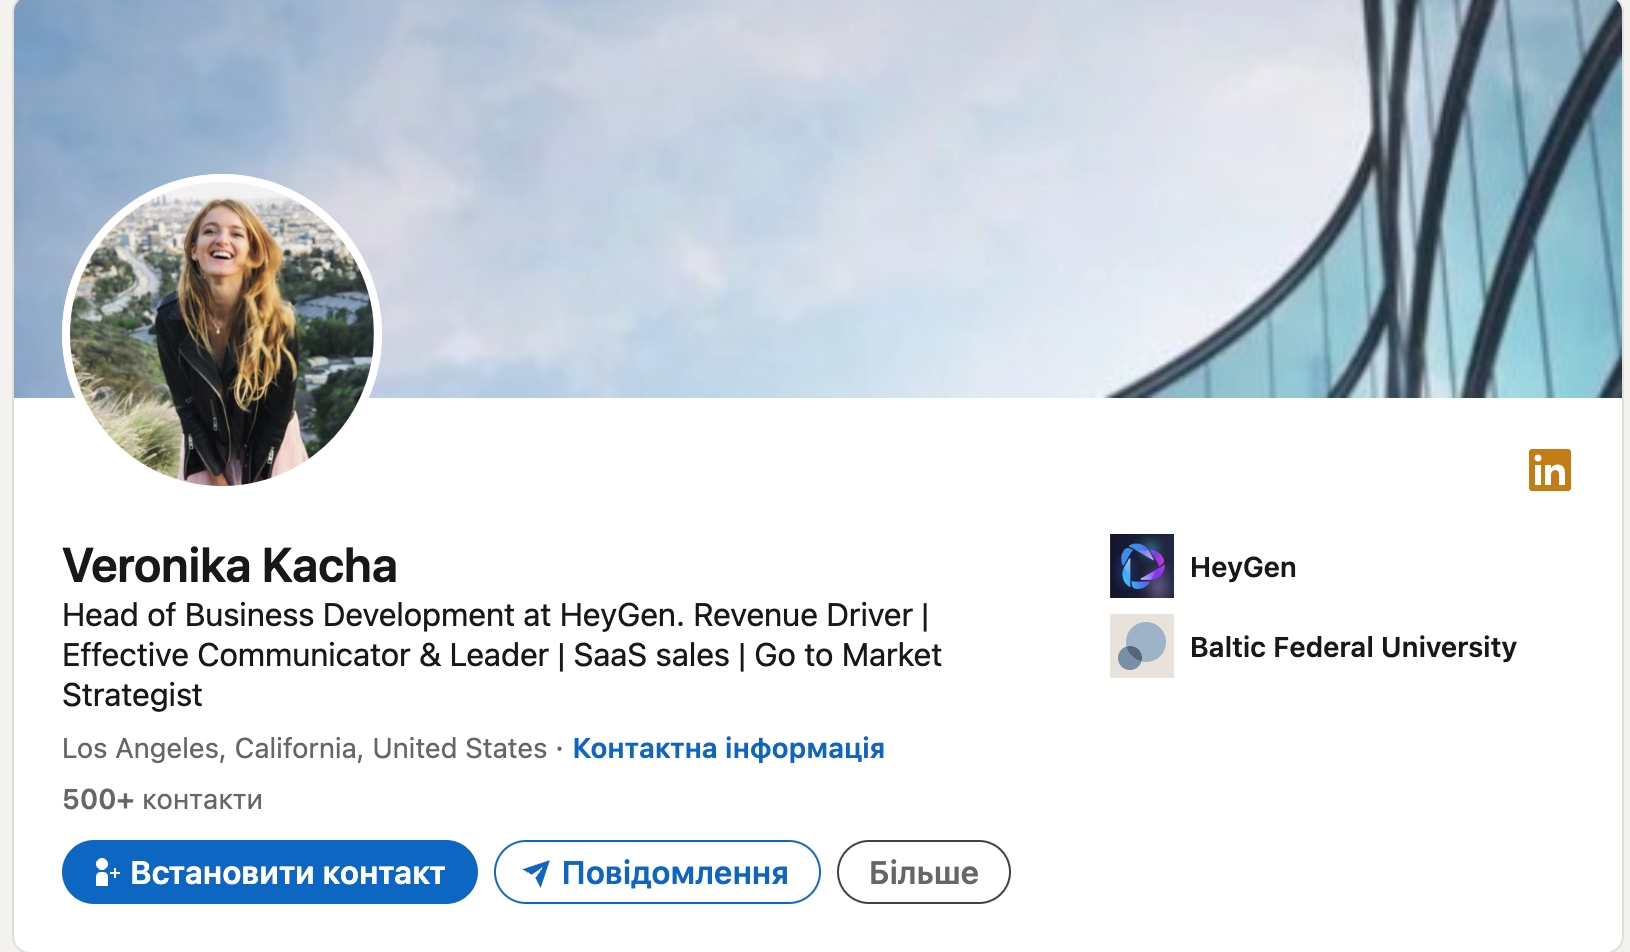 Сервис HeyGen для перевода мемов основали в Китае, в топах – россиянка. Что нужно знать